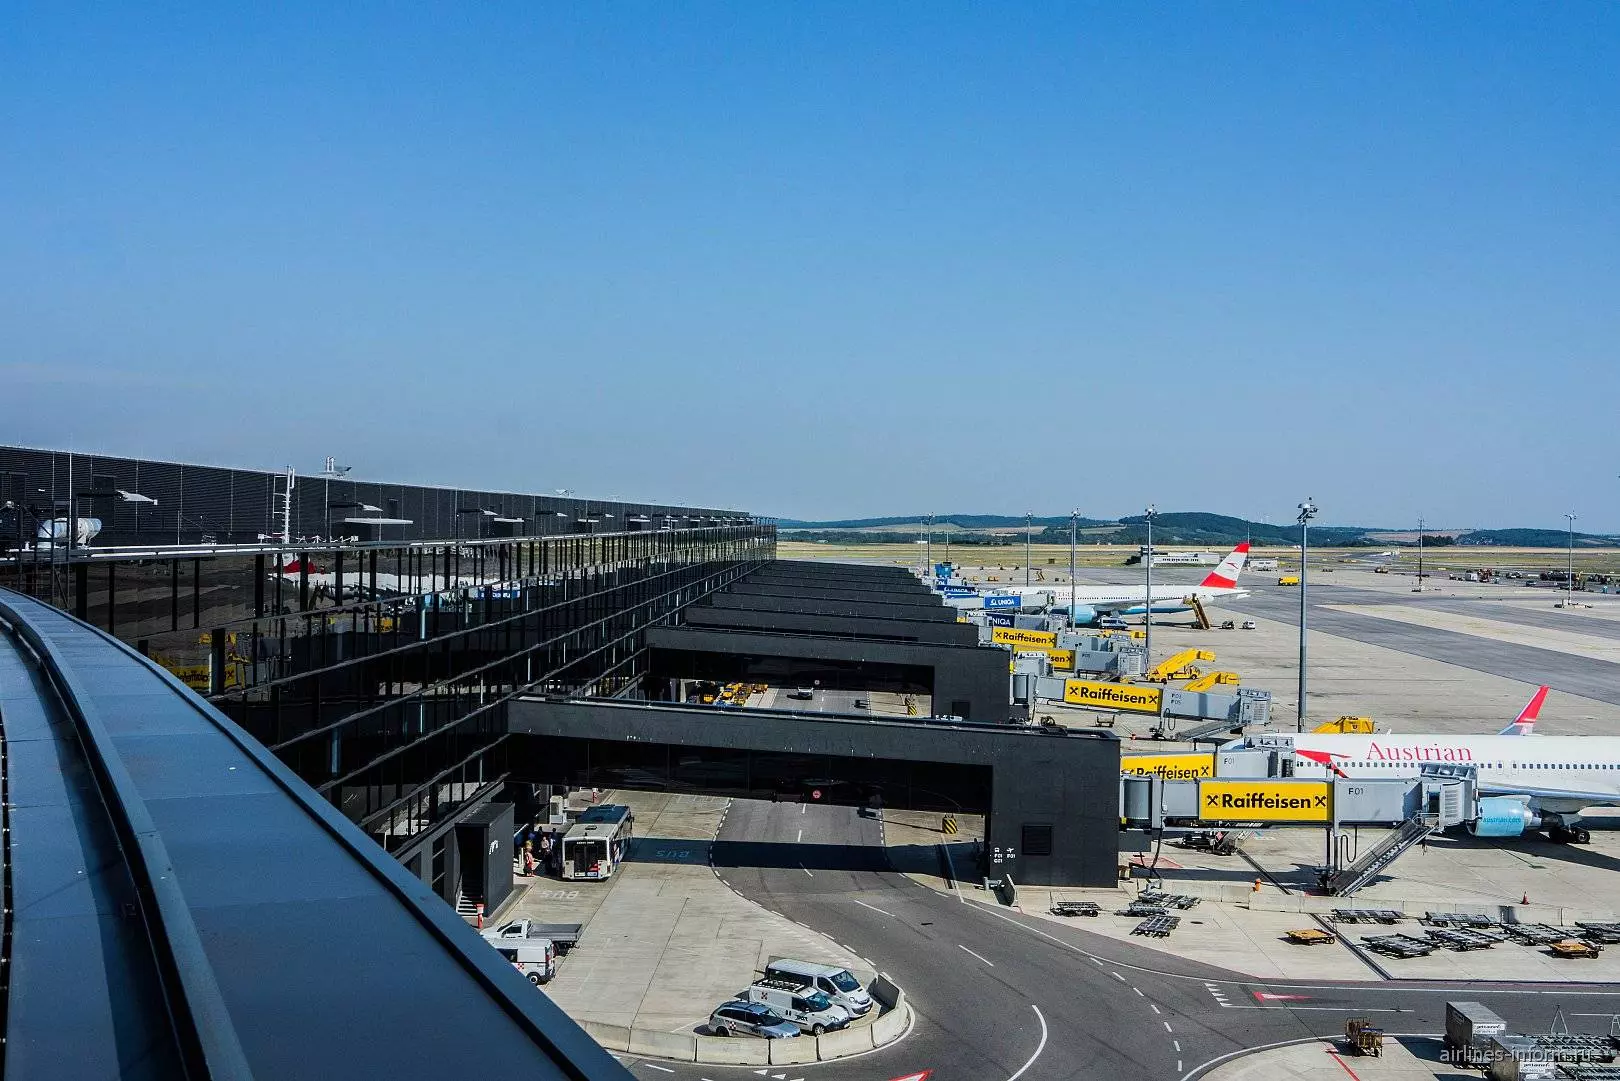 Аэропорт вены швехат - его схема, сервисы и терминалы